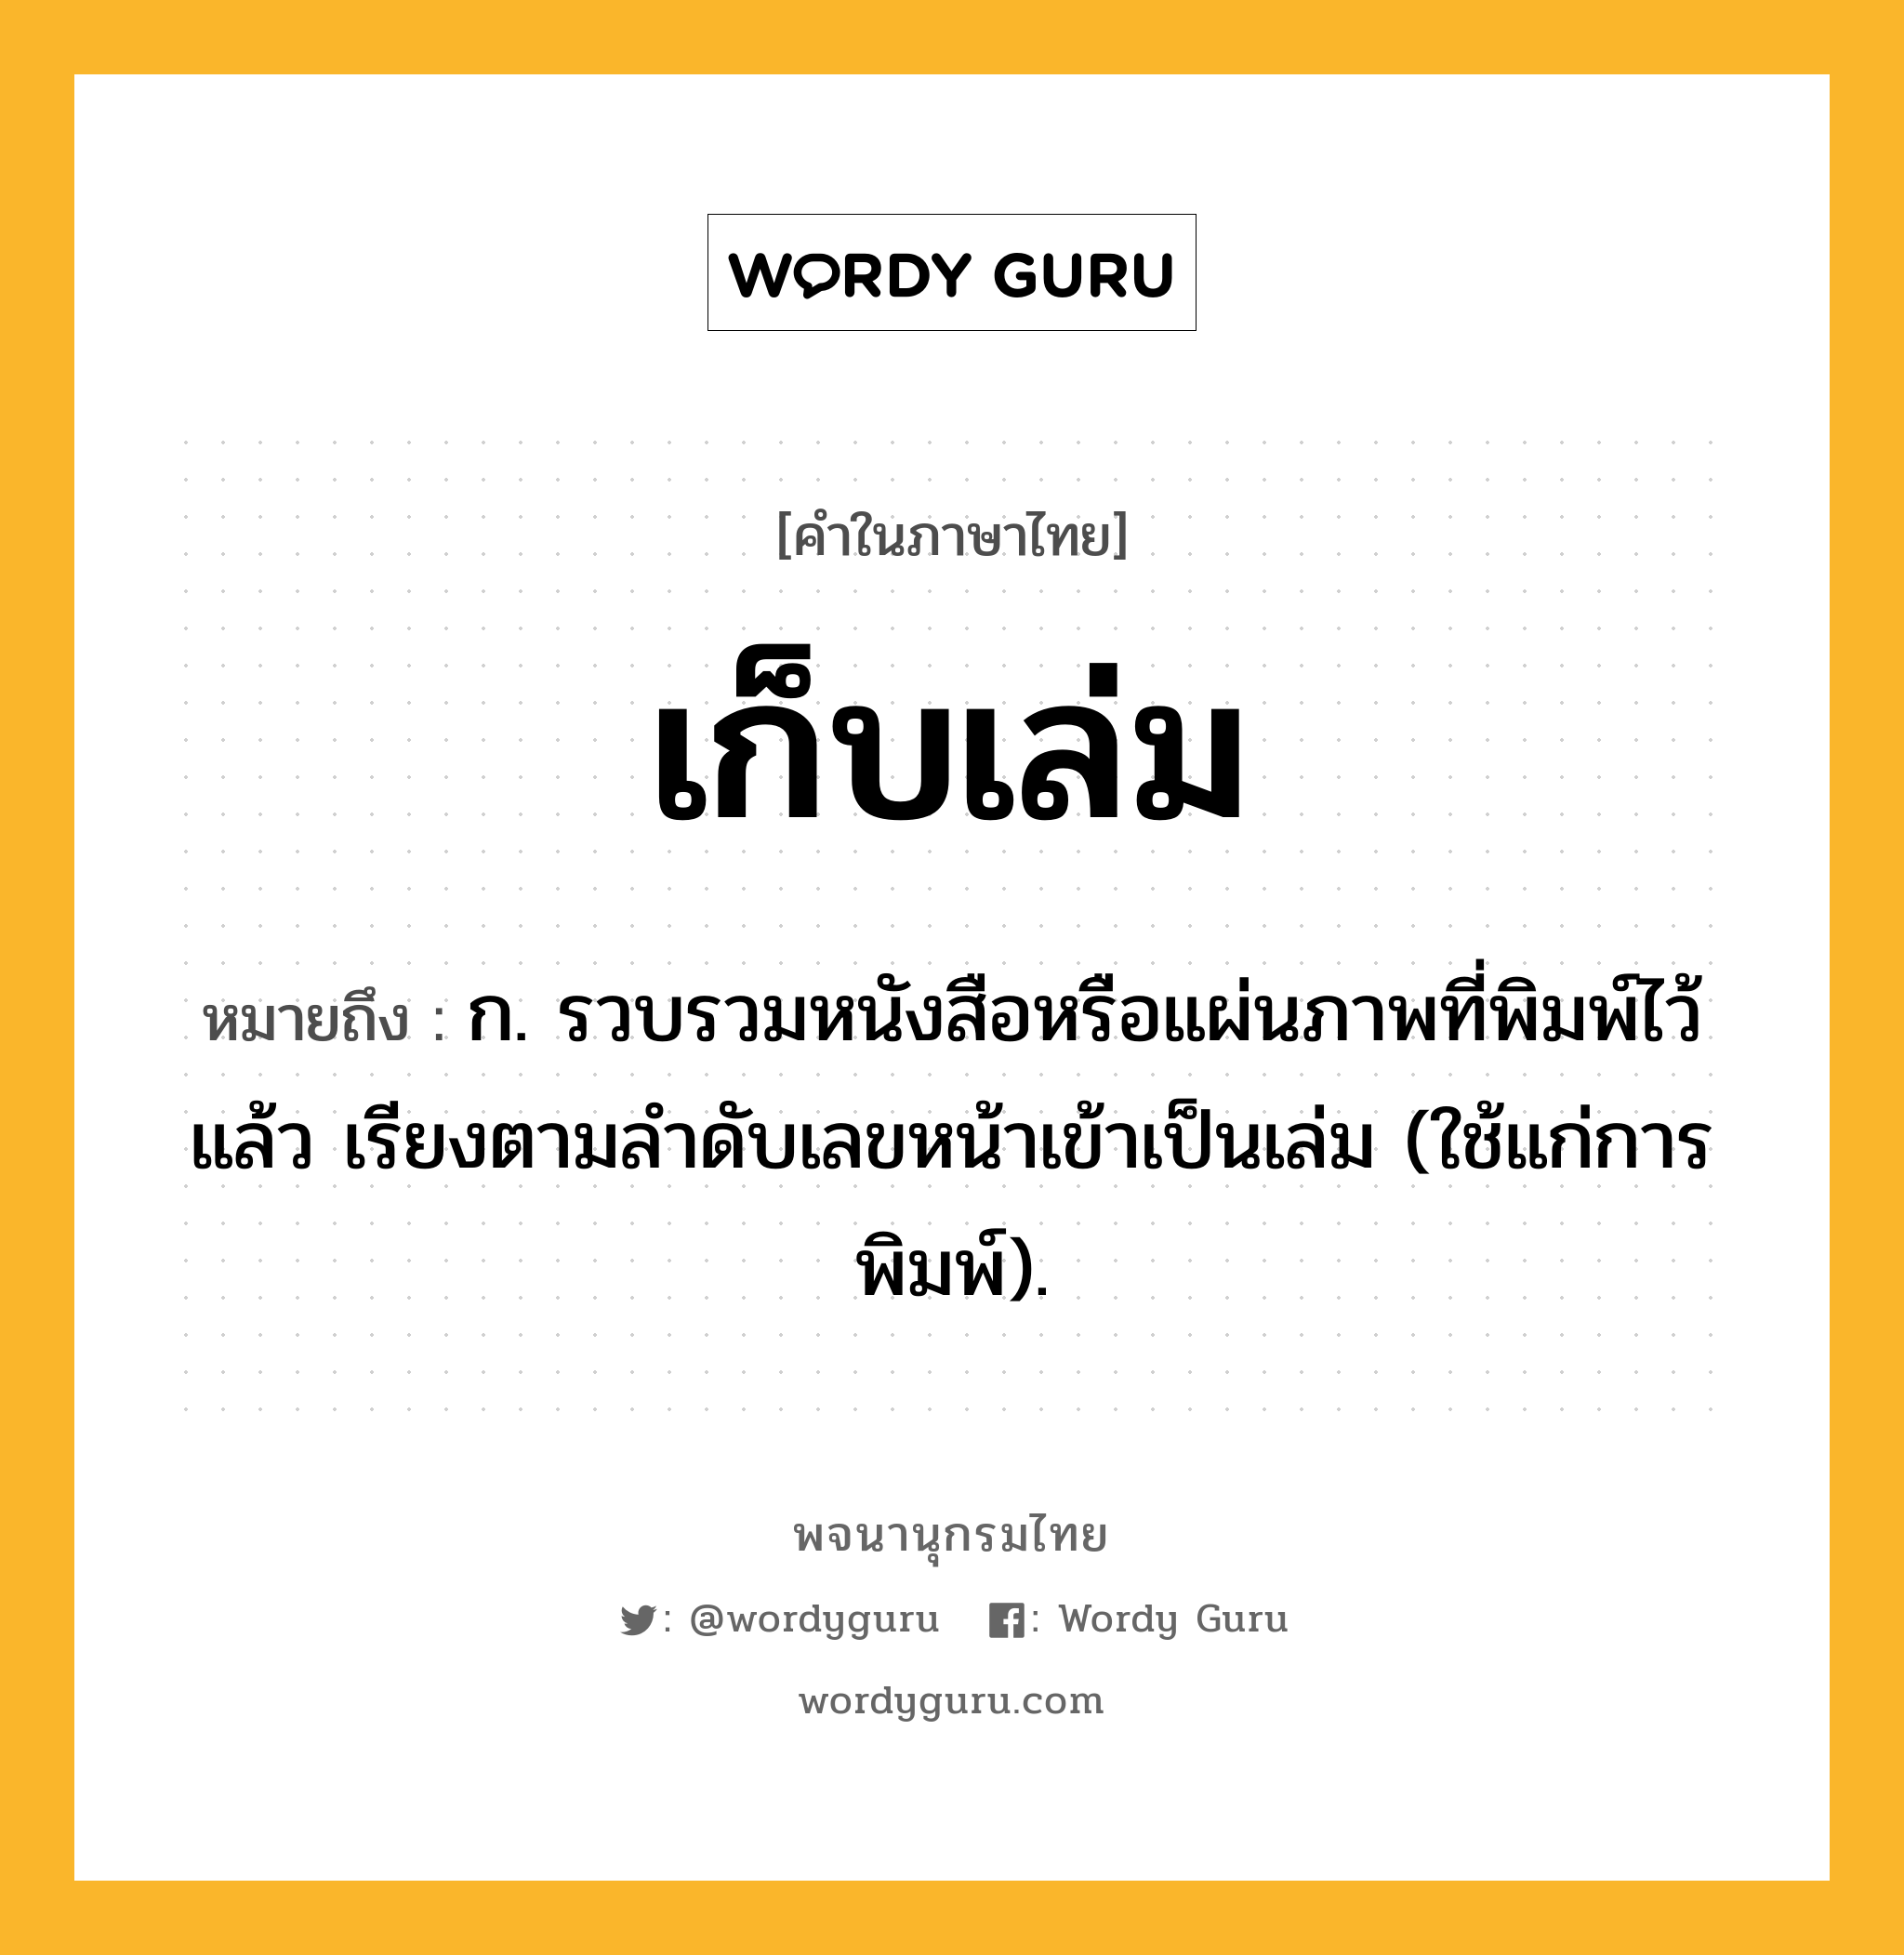 เก็บเล่ม หมายถึงอะไร?, คำในภาษาไทย เก็บเล่ม หมายถึง ก. รวบรวมหนังสือหรือแผ่นภาพที่พิมพ์ไว้แล้ว เรียงตามลําดับเลขหน้าเข้าเป็นเล่ม (ใช้แก่การพิมพ์).